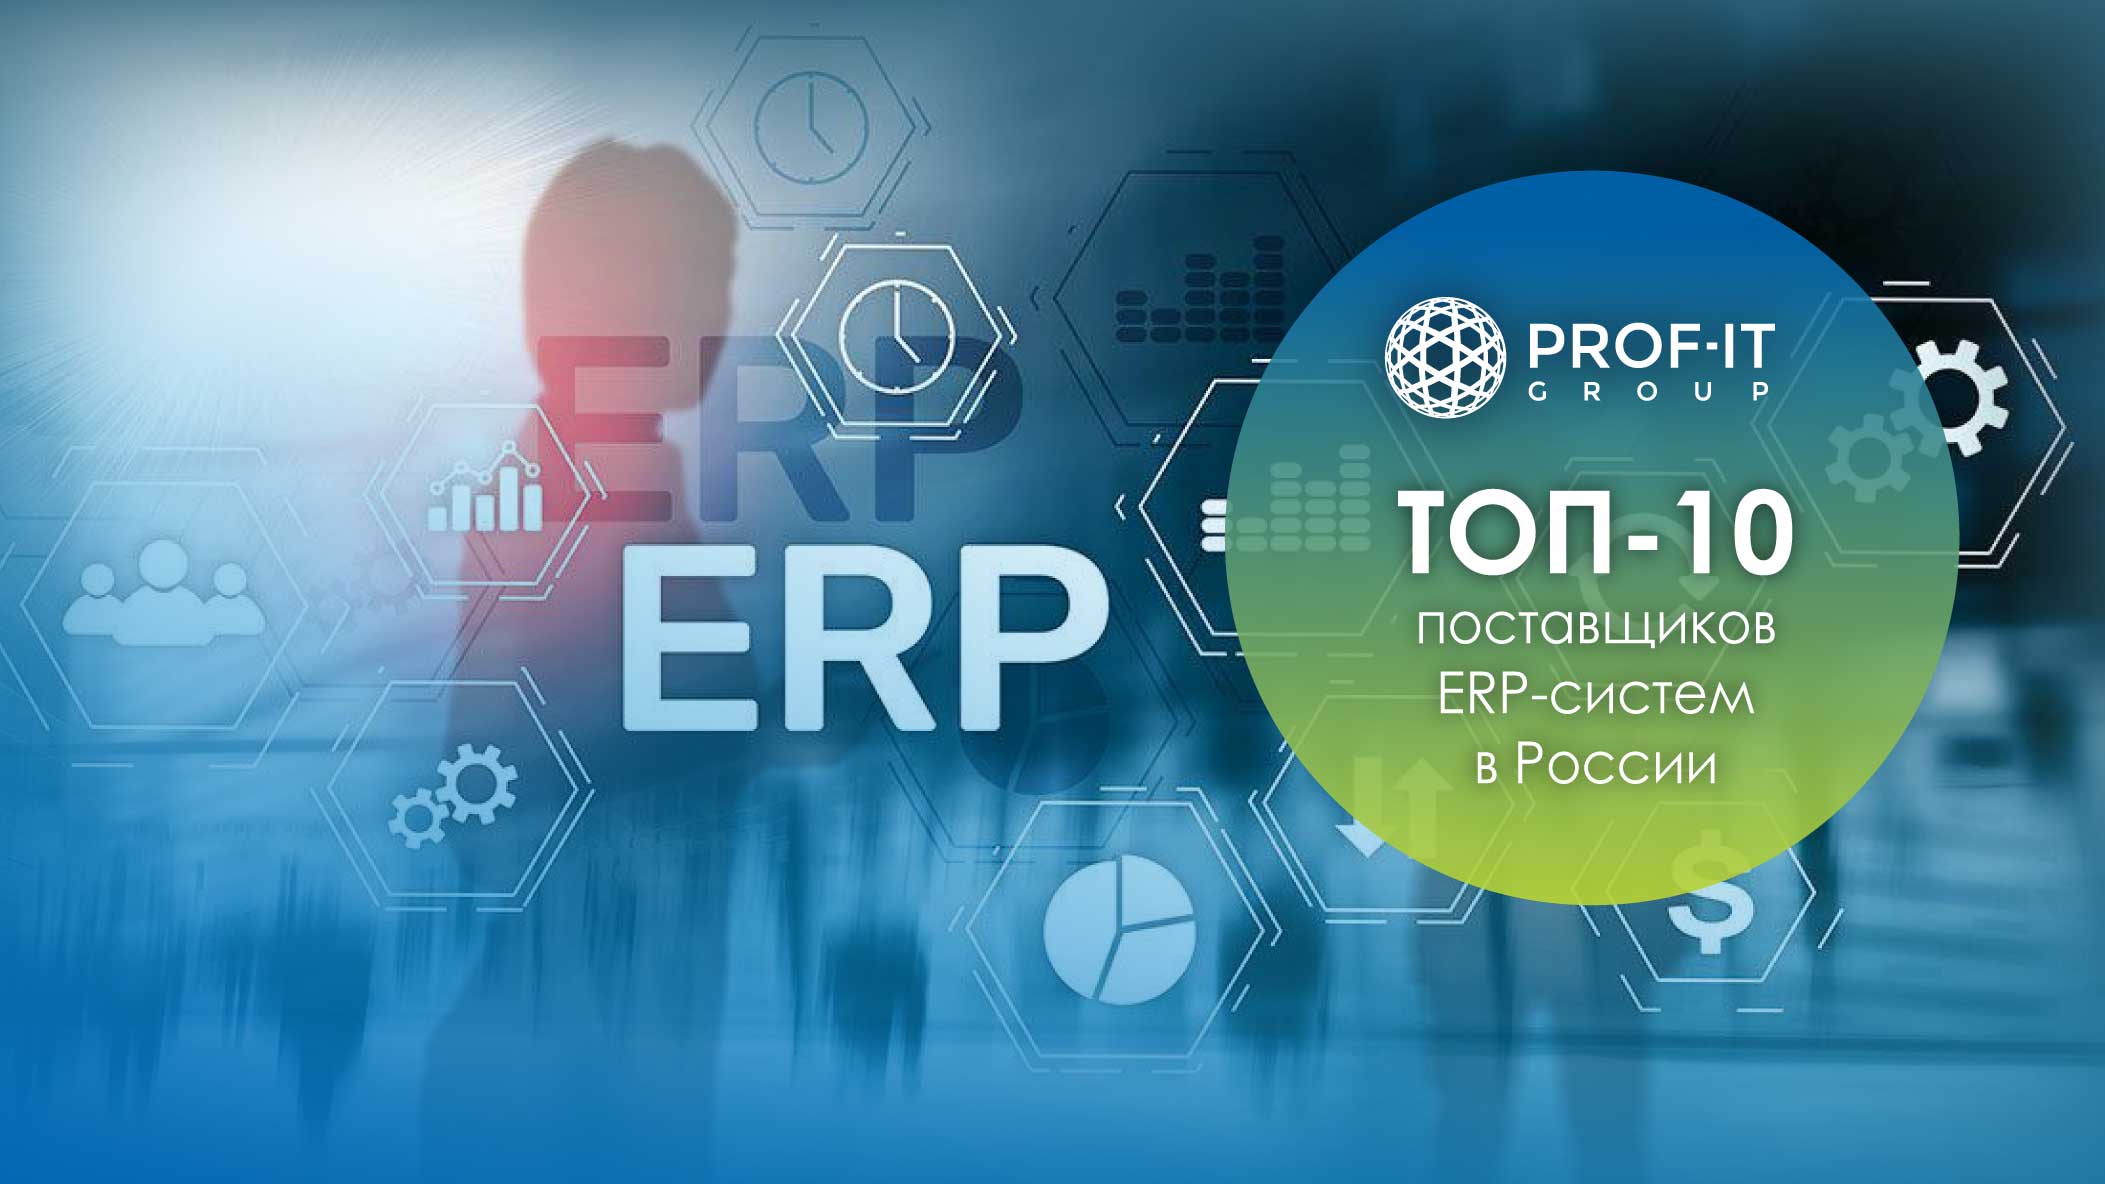 PROF-IT GROUP вошла в ТОП-10 поставщиков ERP-систем в России